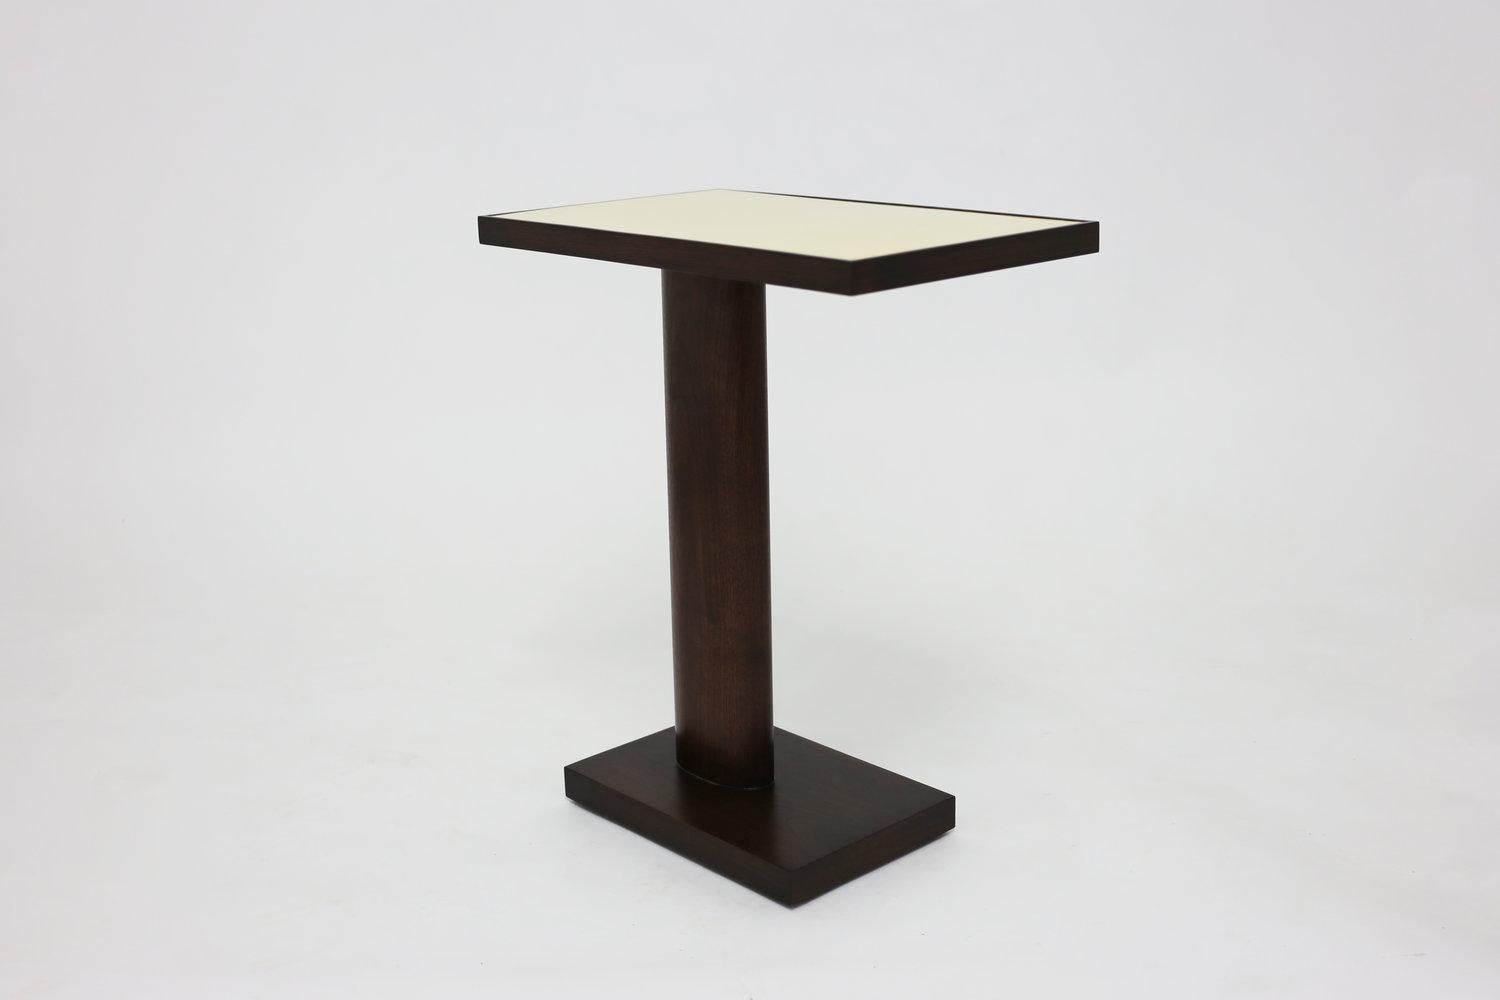 La table Halsey peut être fabriquée sur mesure dans le bois et la finition de votre choix, ainsi que dans des dimensions personnalisées (prix sur demande). Le plateau peut être fabriqué en bois fini ou peut être tapissé et laqué pour une variation